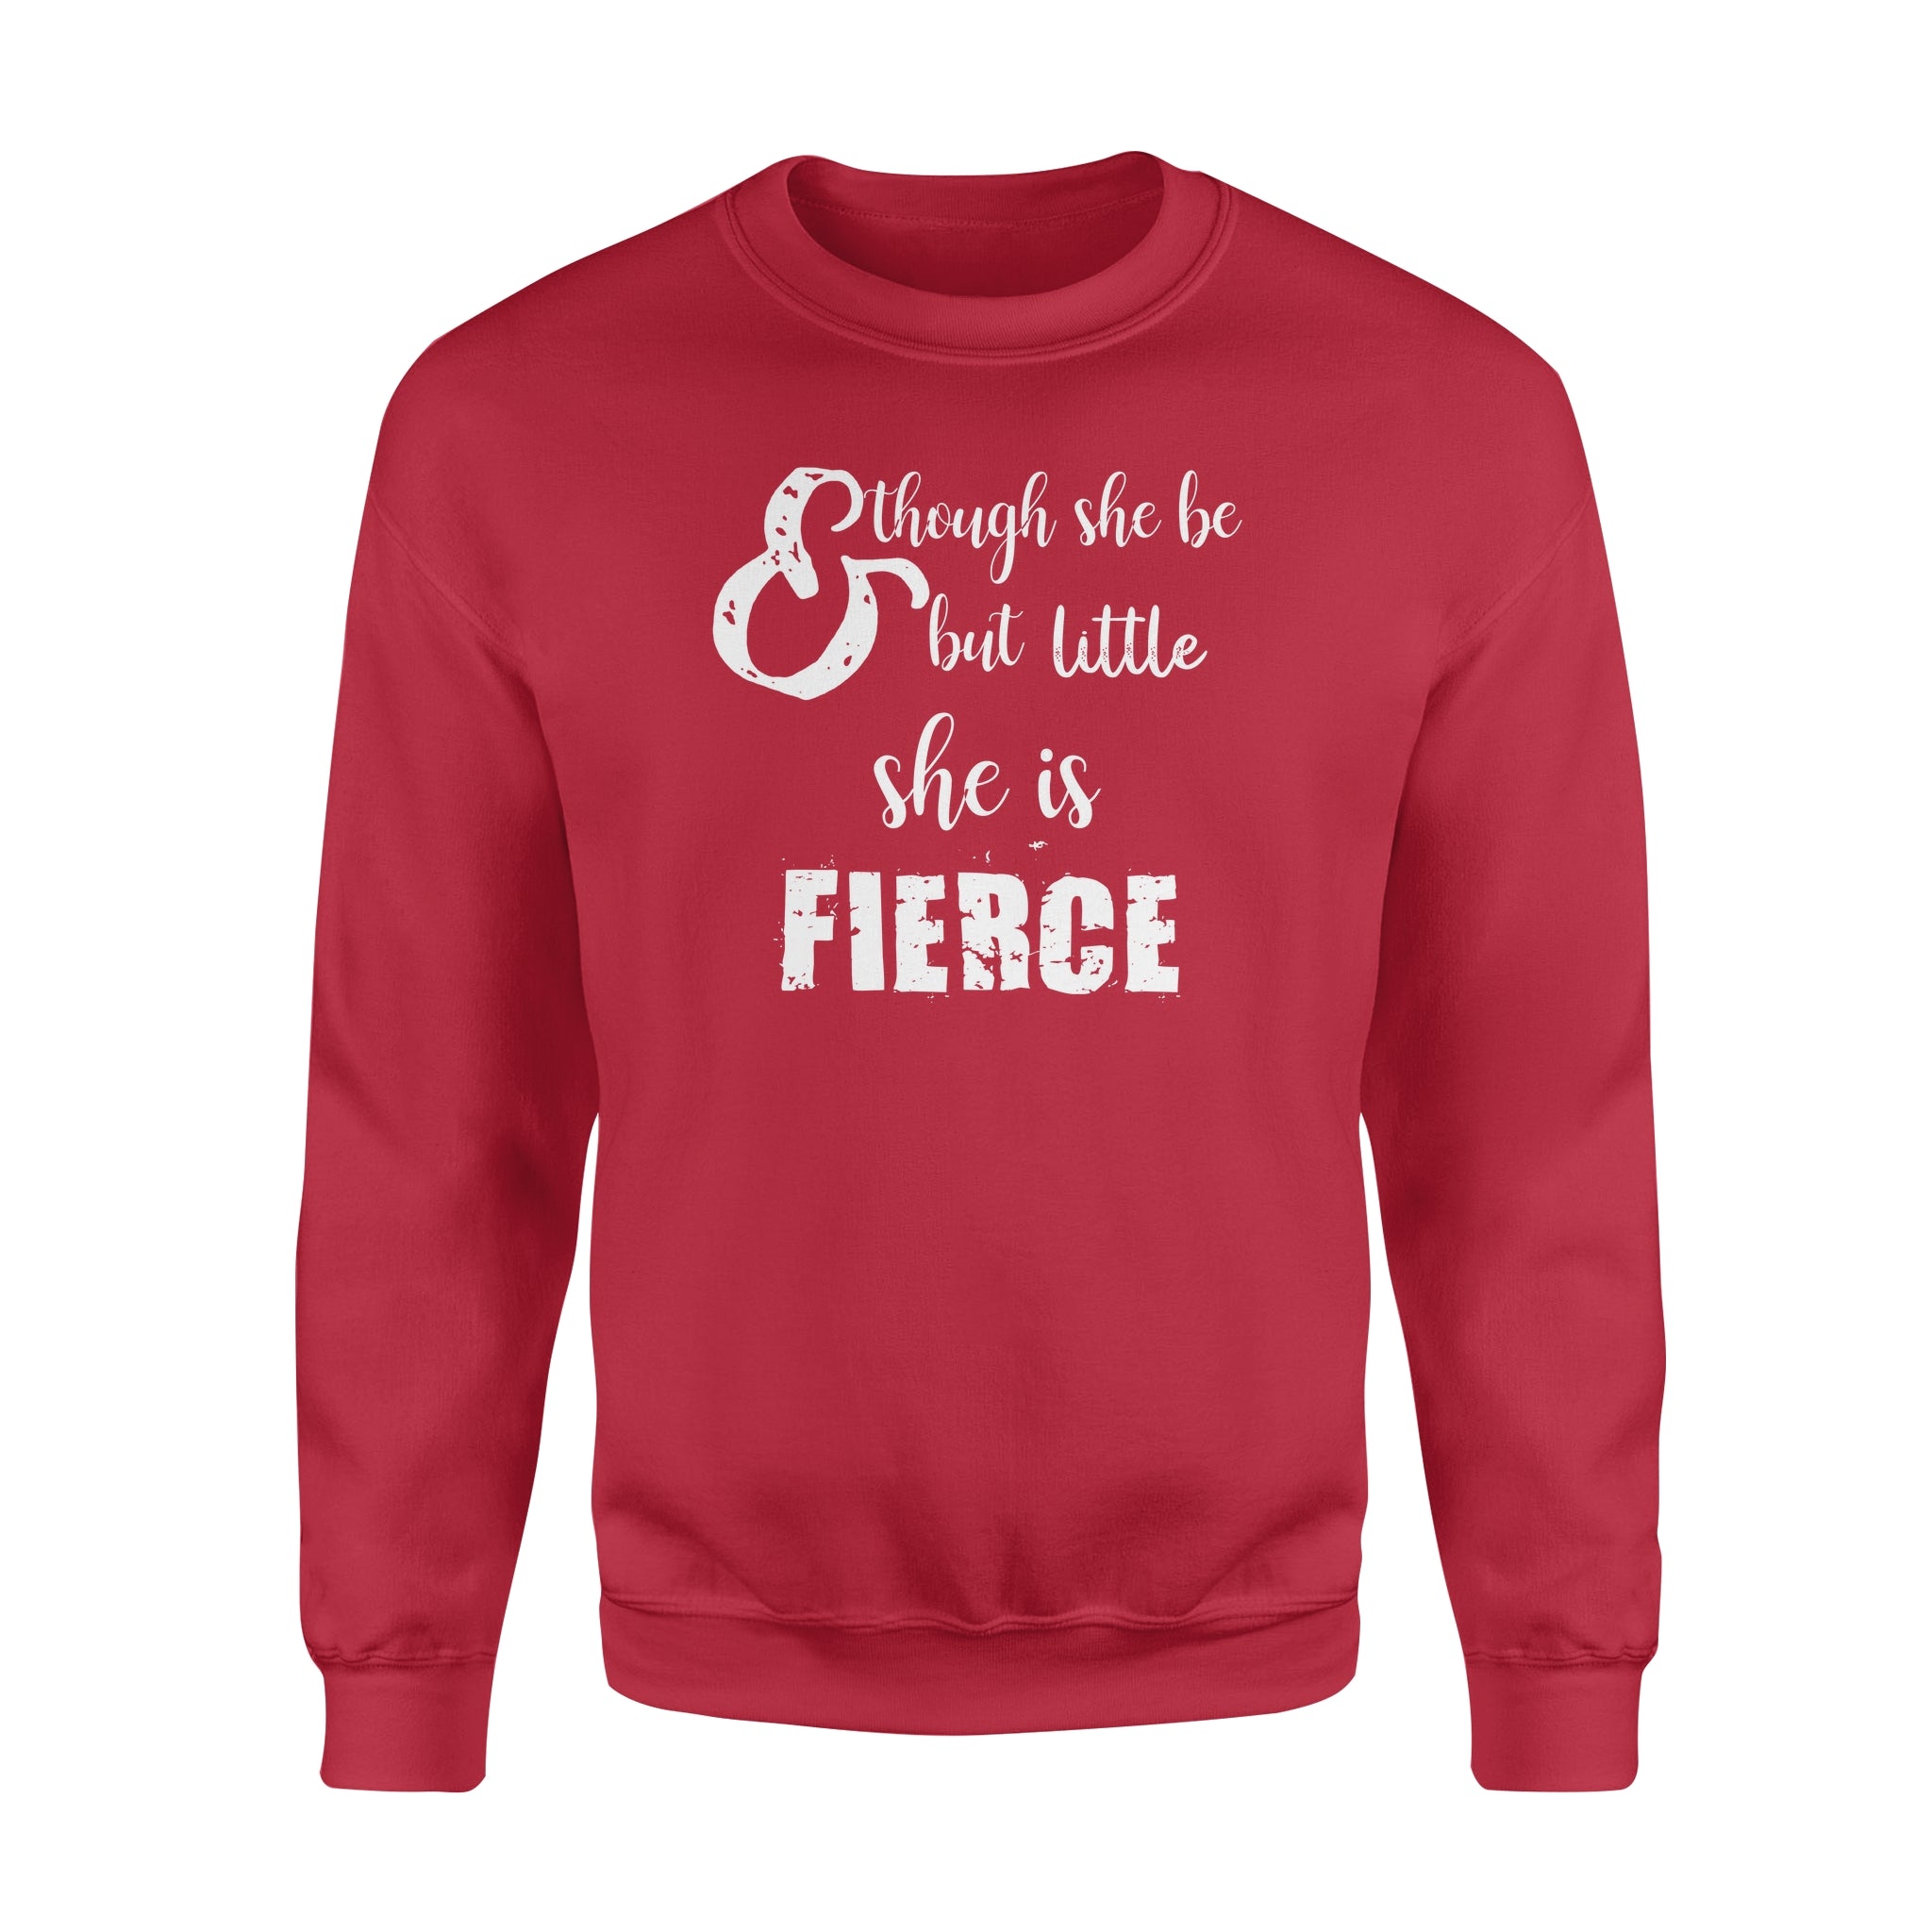 Though She Be But Little She is Fierce - Standard Crew Neck Sweatshirt